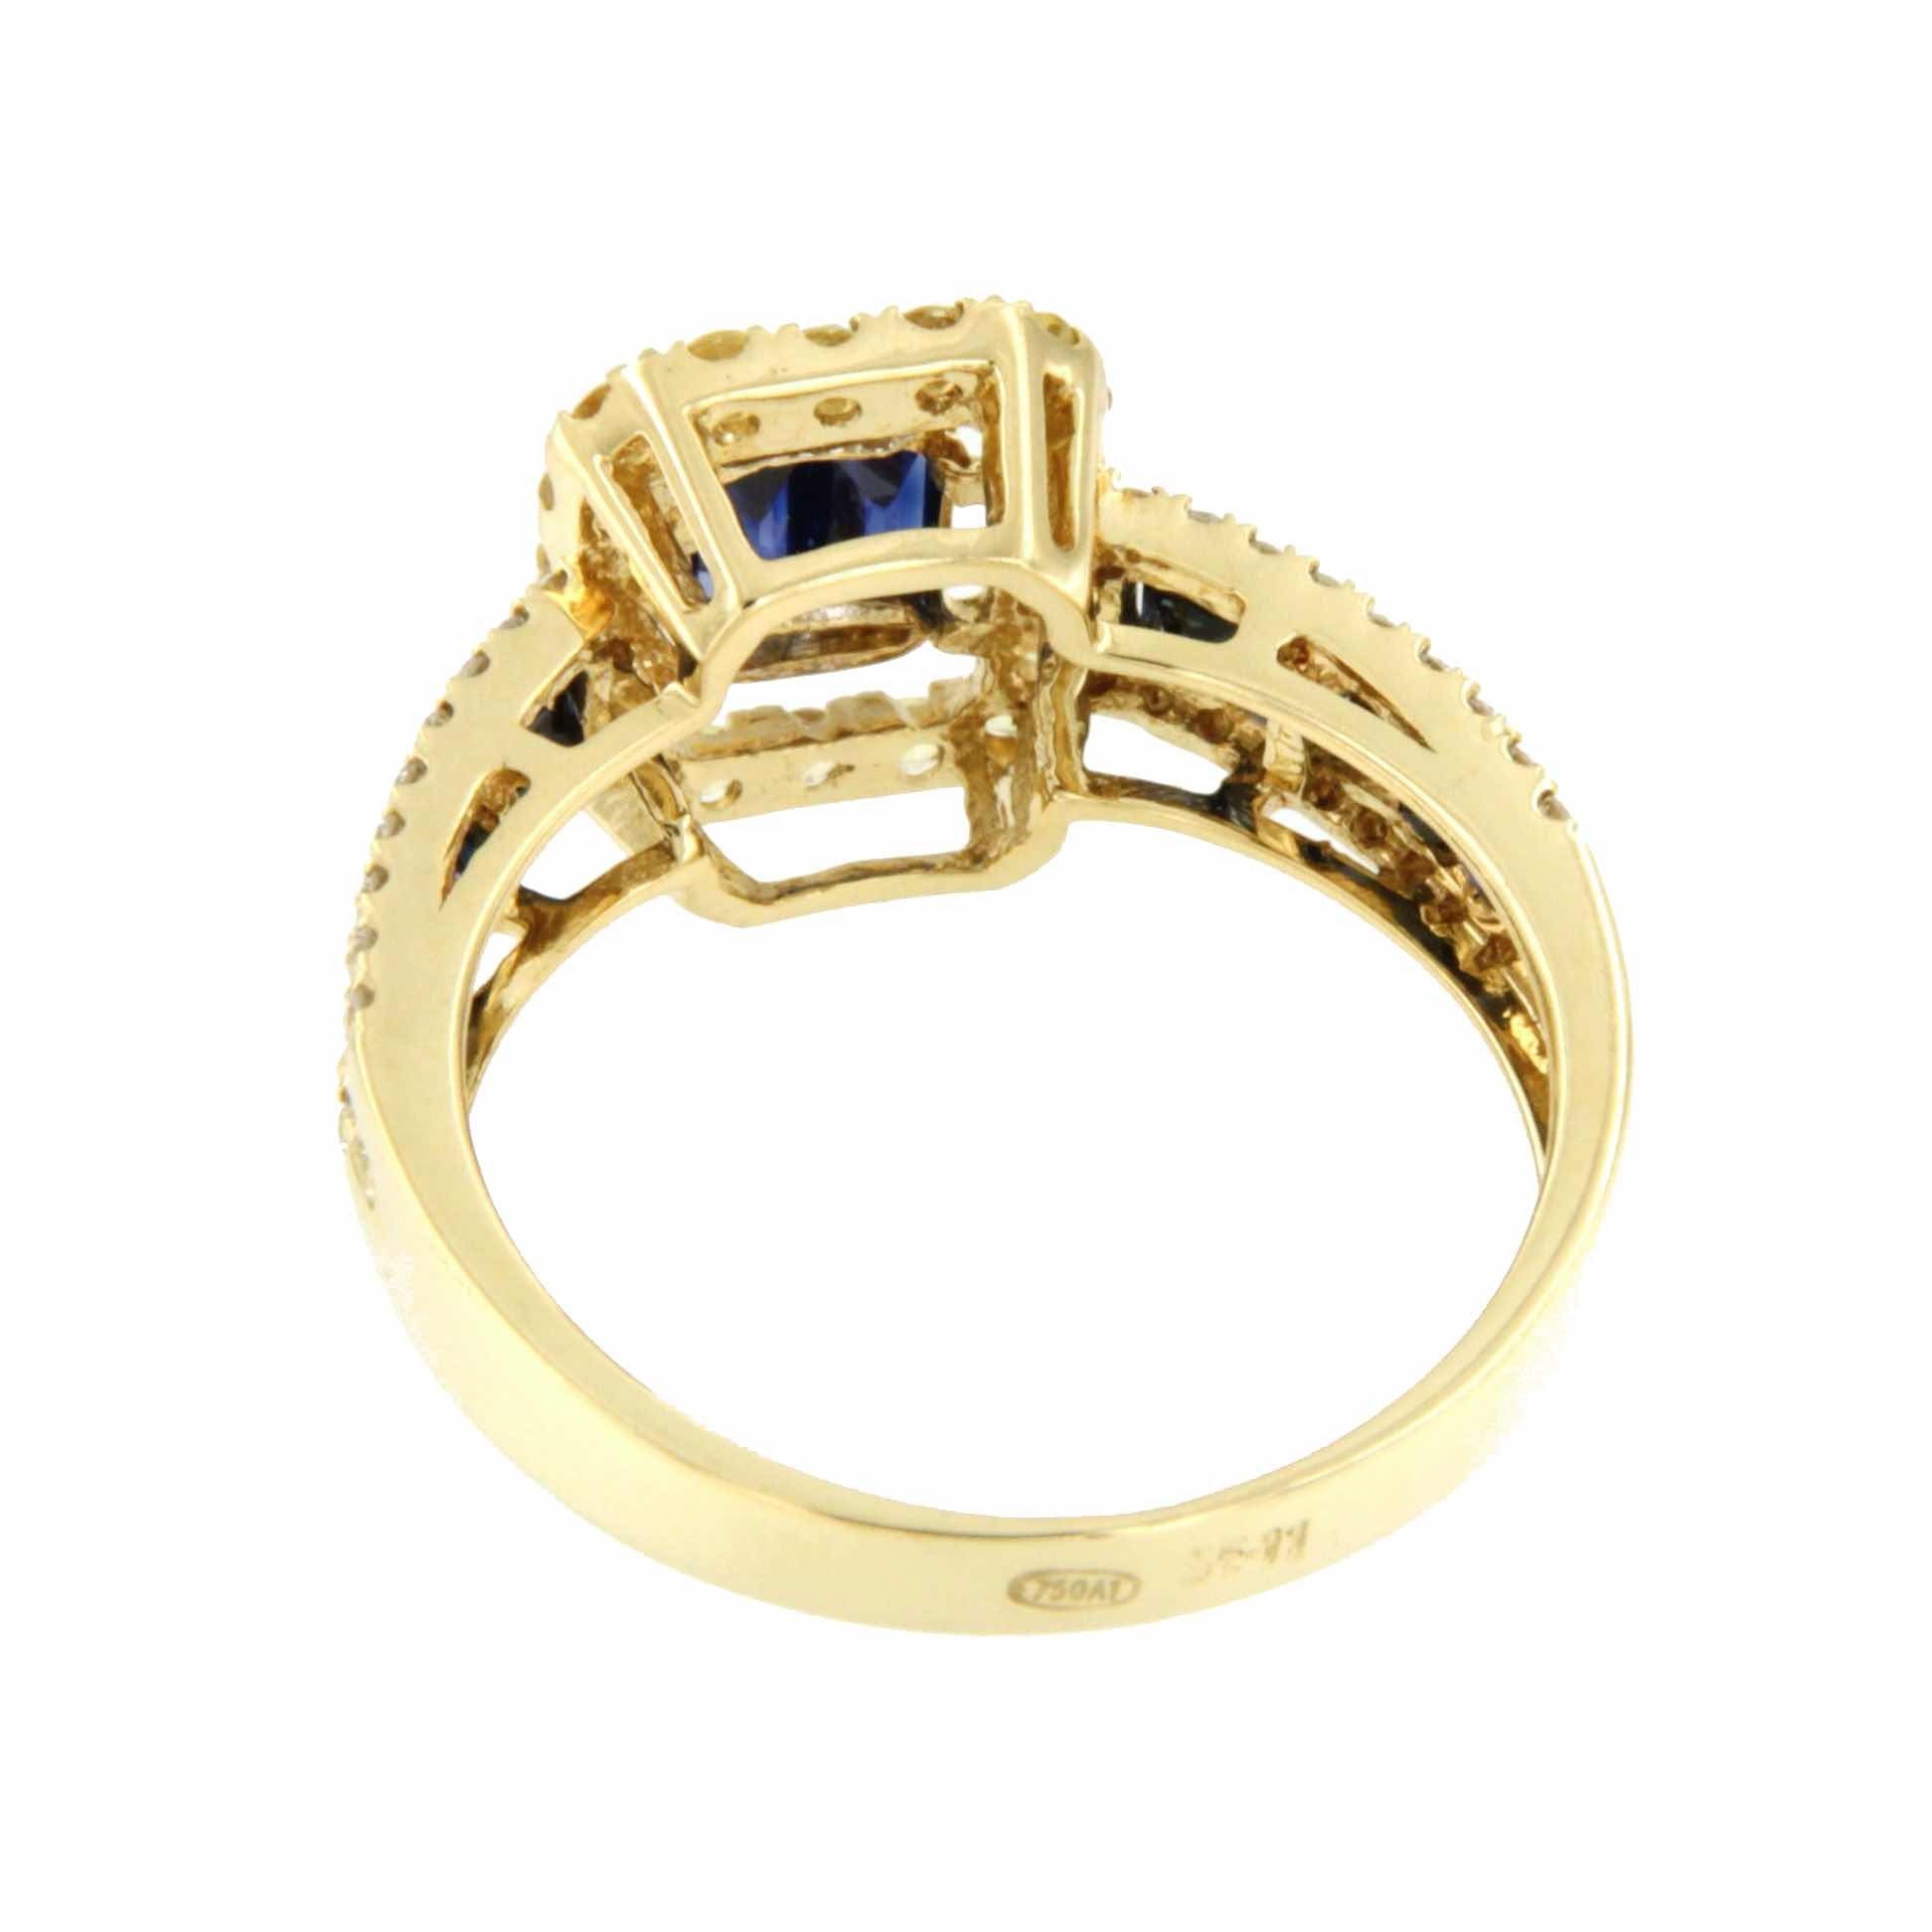 ASPETTA anillo oro amarillo con brillantes y zafiros dos colores - Roman Joyero